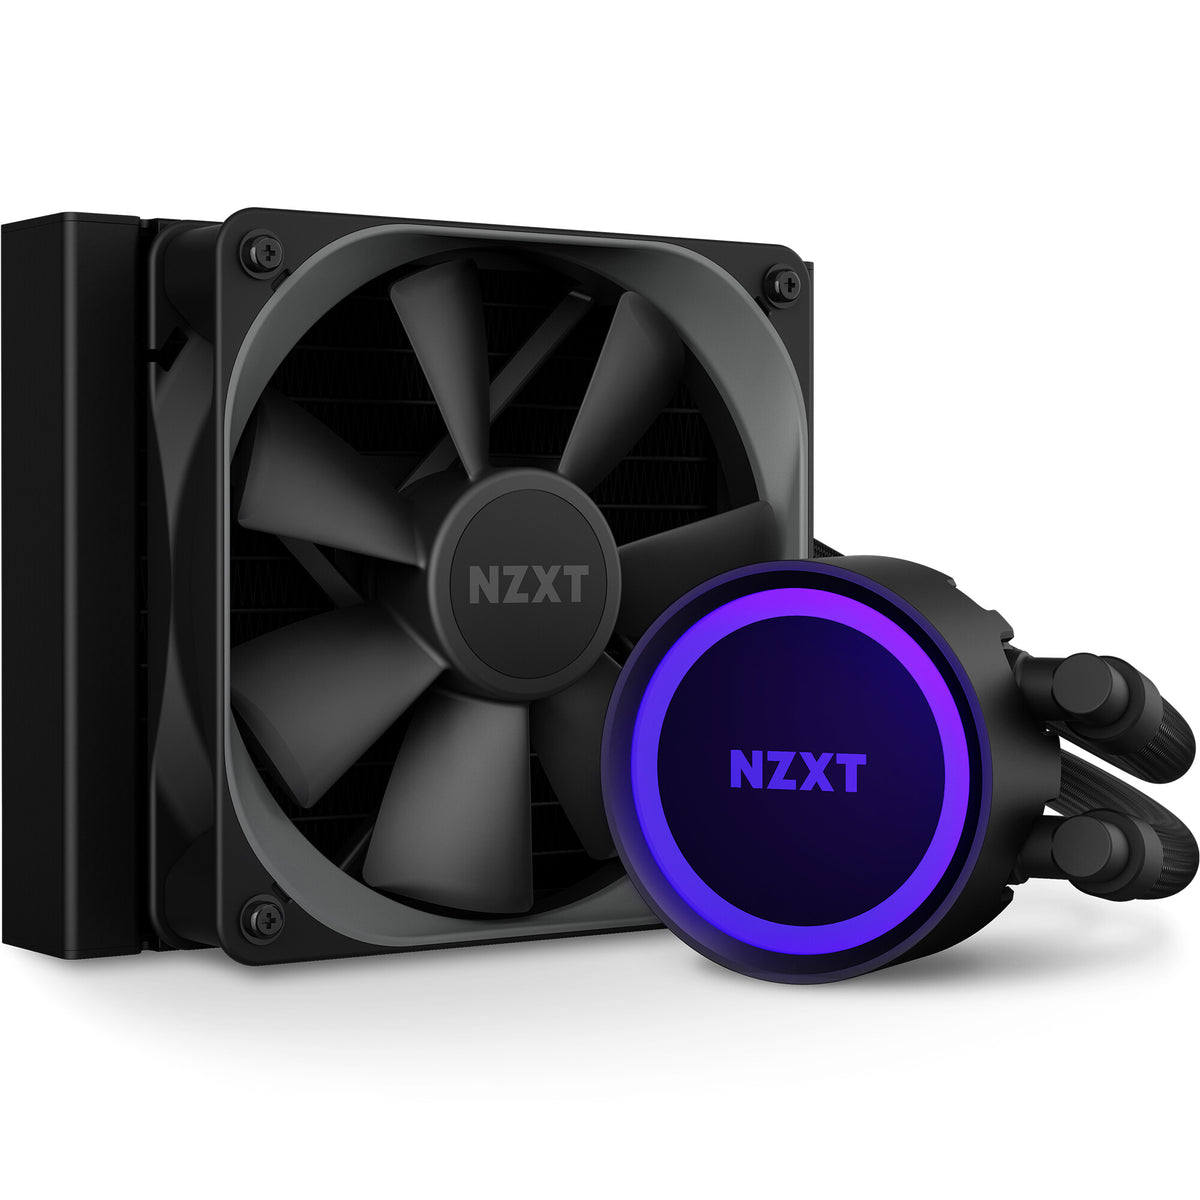 NZXT Kraken 120 - All-in-one Liquid Processor Cooler in Black - 120mm